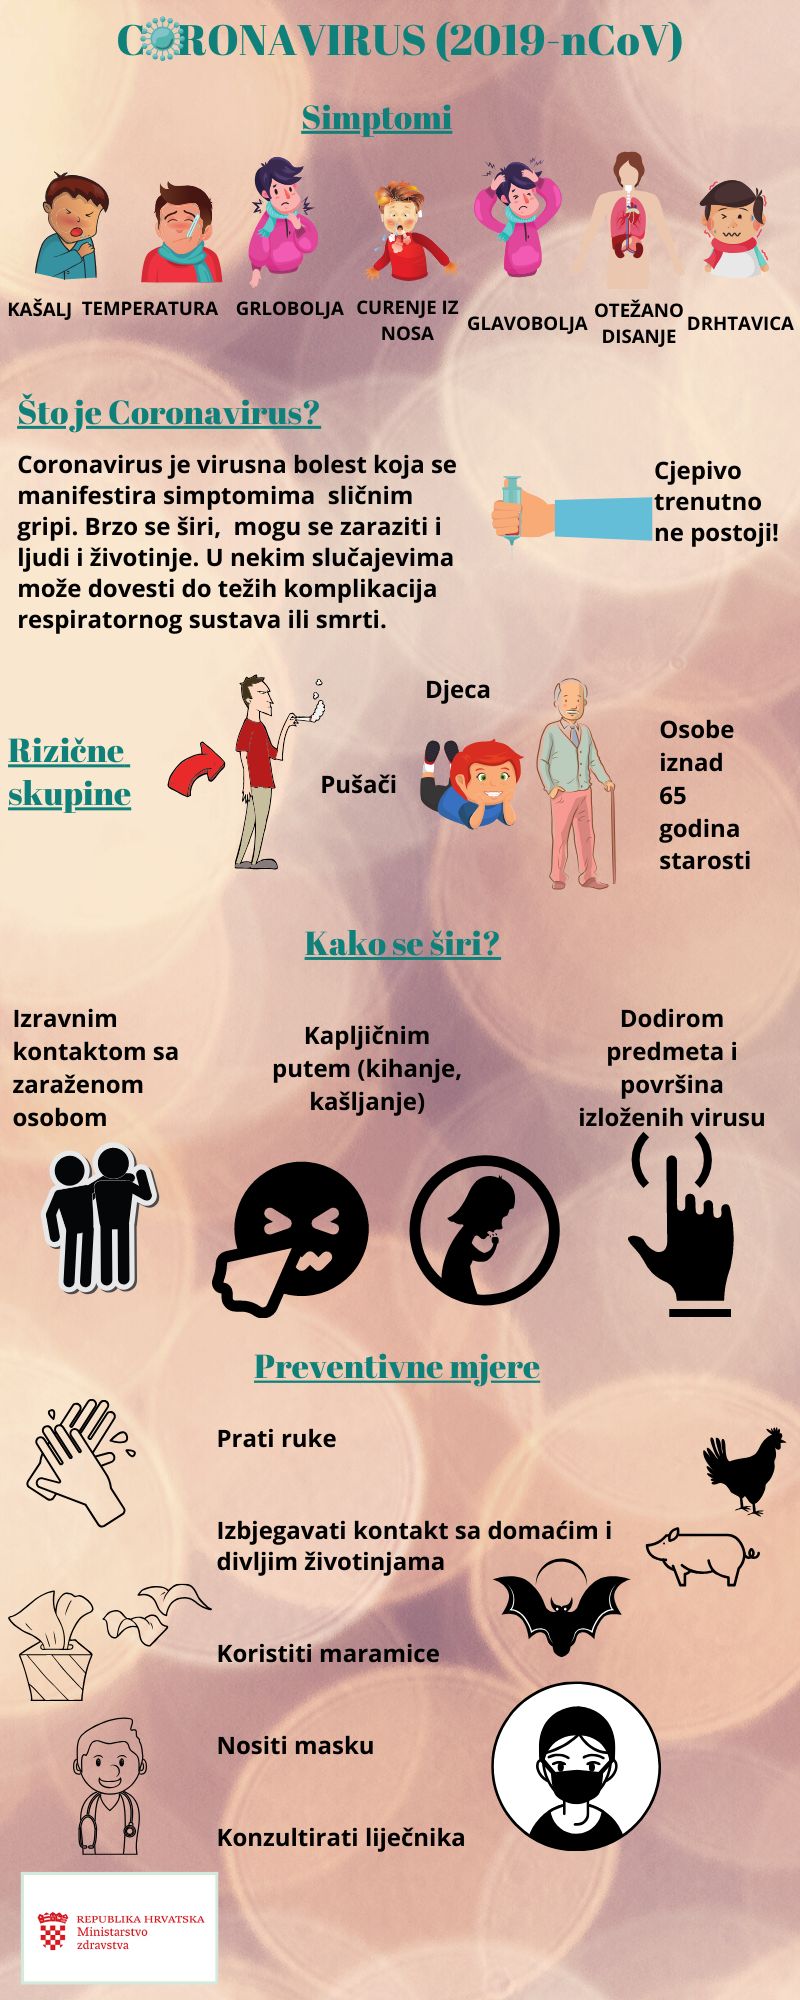 koronavirus_infografika.jpg